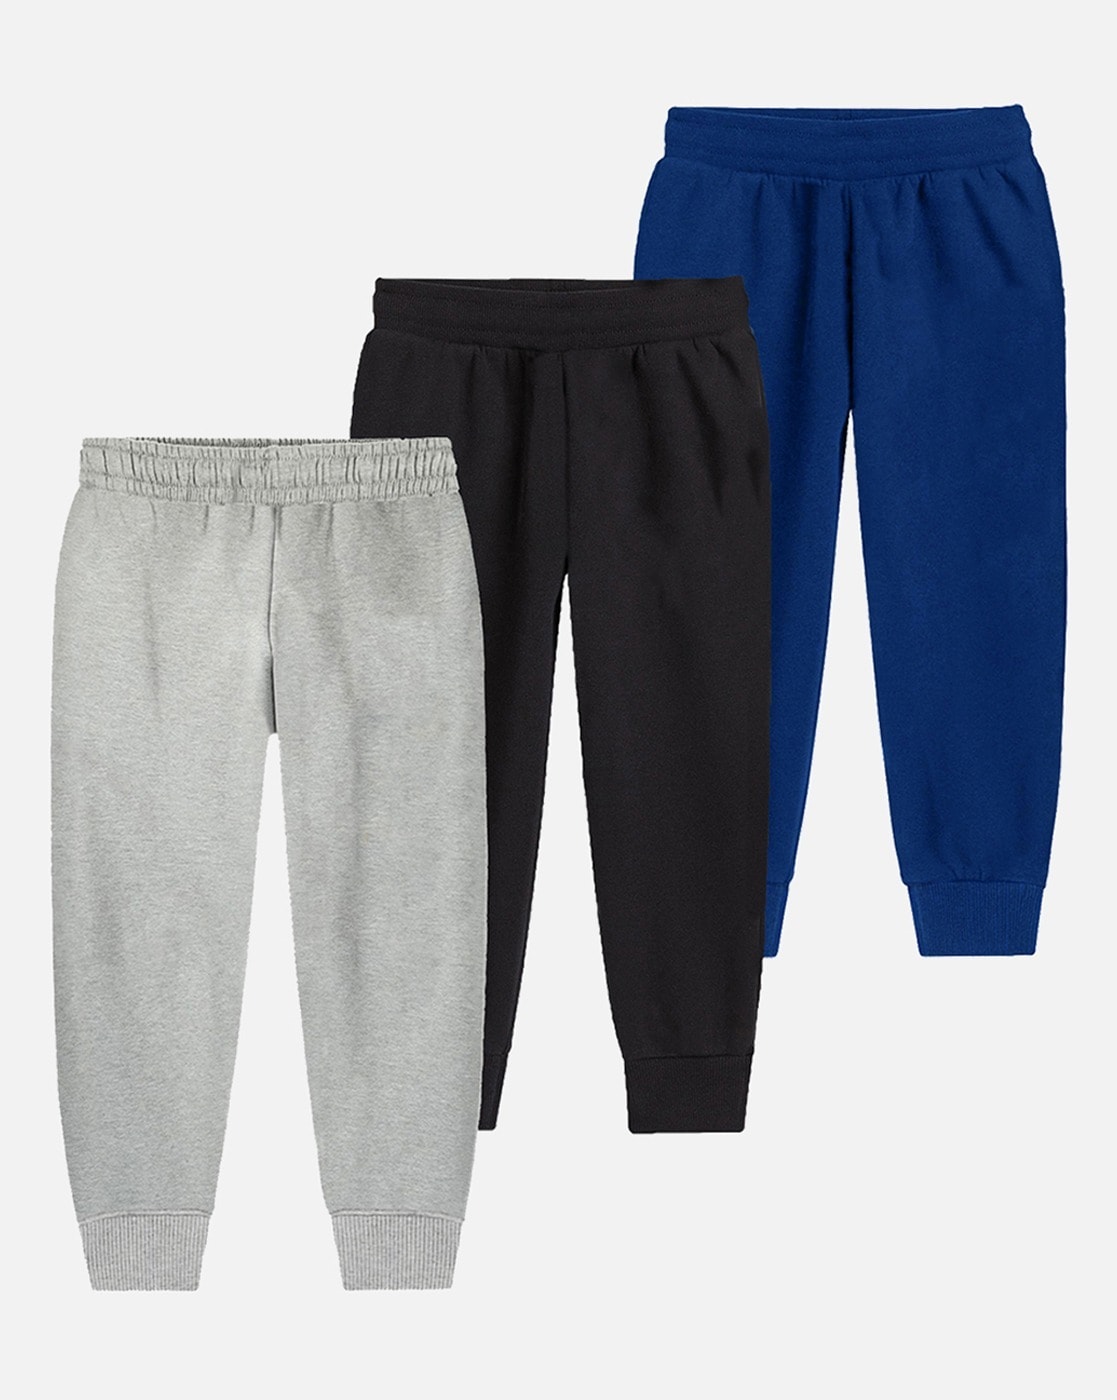 Track Pants Plus Size Cotton | Loose Sweatpants Men 7xl | Sweat Pants Men  Size 8xl - Sweatpants - Aliexpress